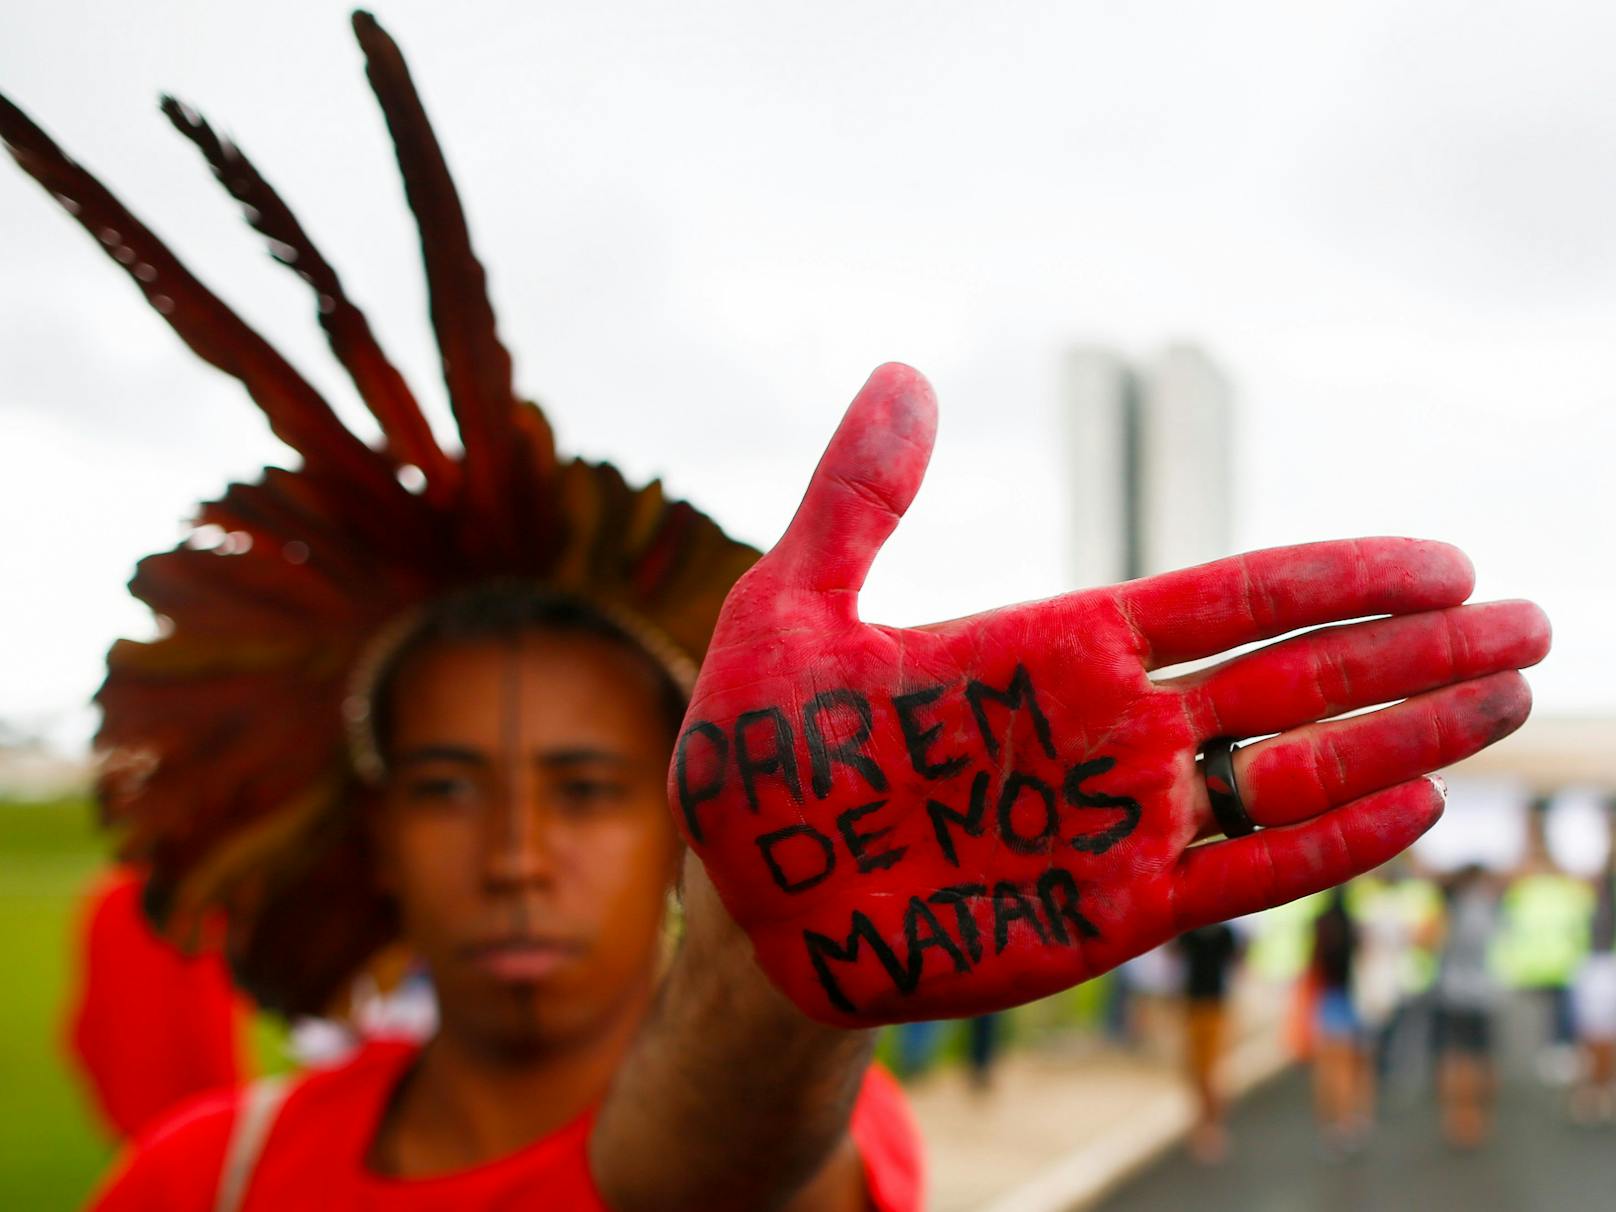 "Hör auf, uns zu töten" - Indigene demonstrieren in Brasilien gegen ihren Präsidenten Jair Bolsonaro.